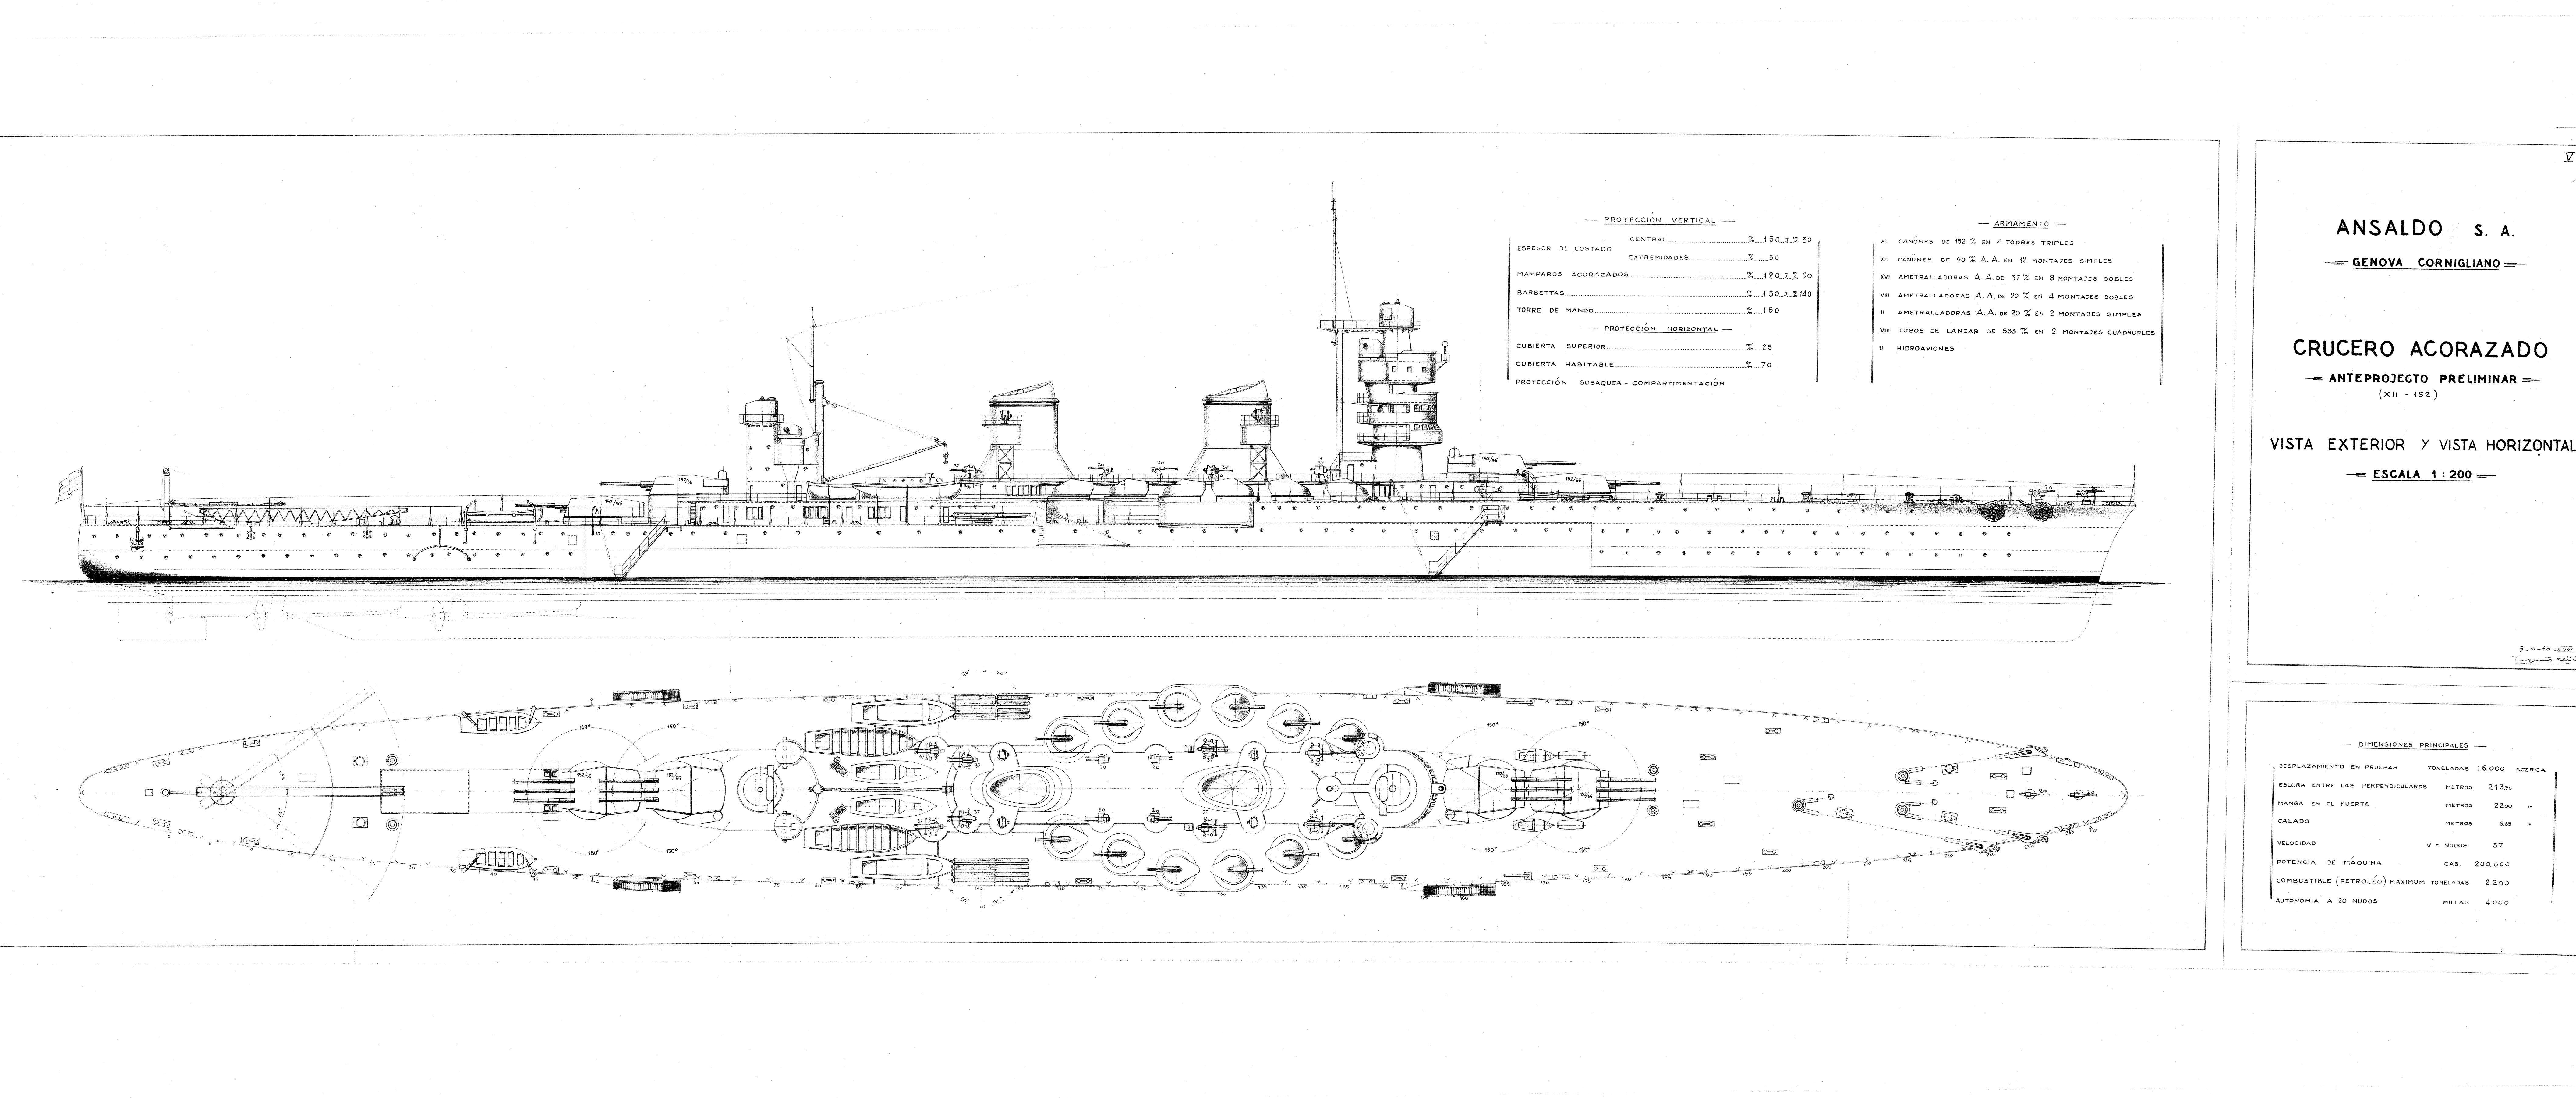 Ansaldo heavy cruiser for Spain variant 2